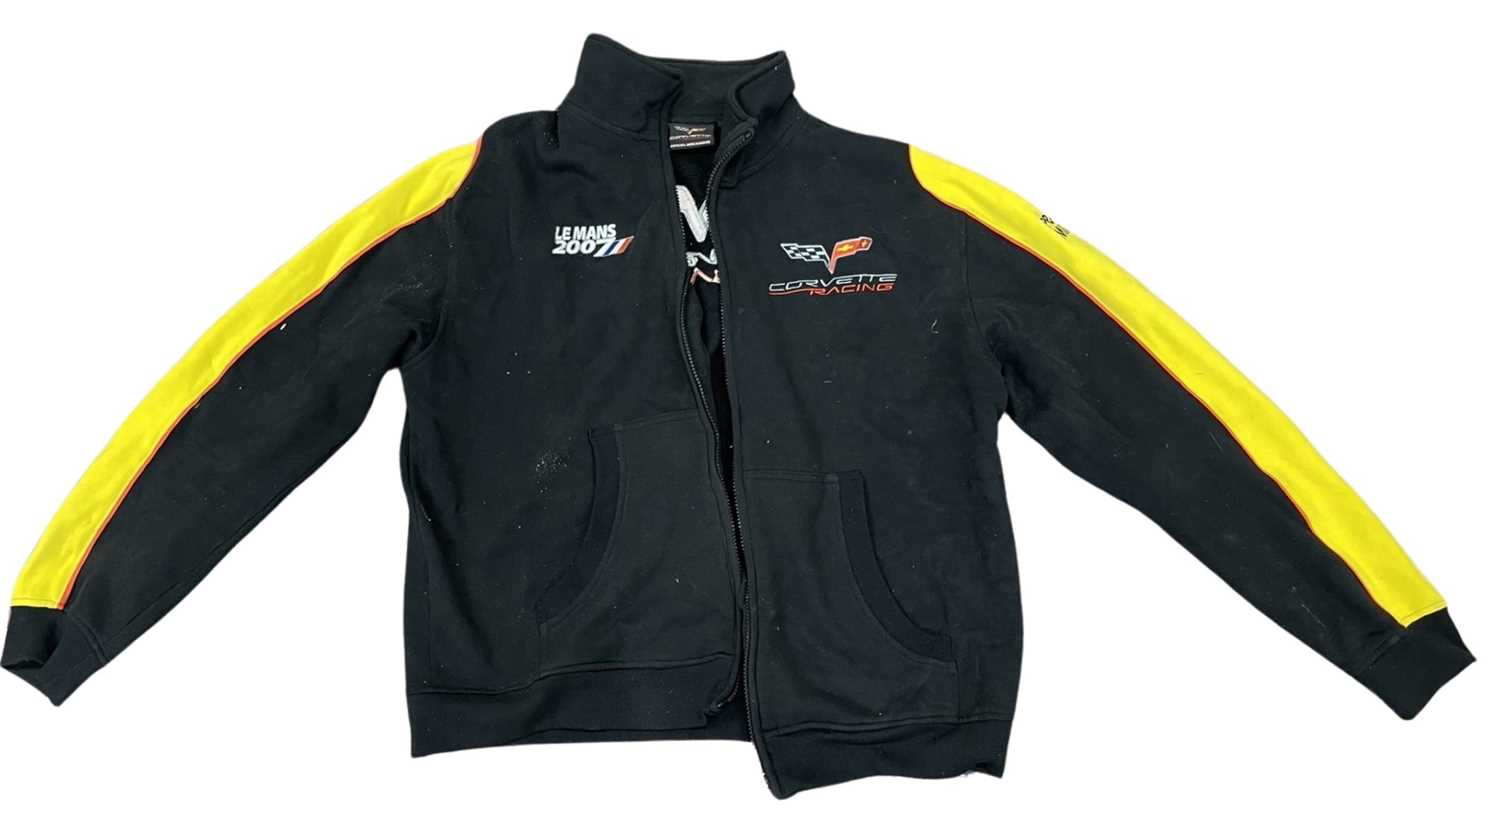 A Corvette Racing / Le Mans 2007 Fleece jacket, size L